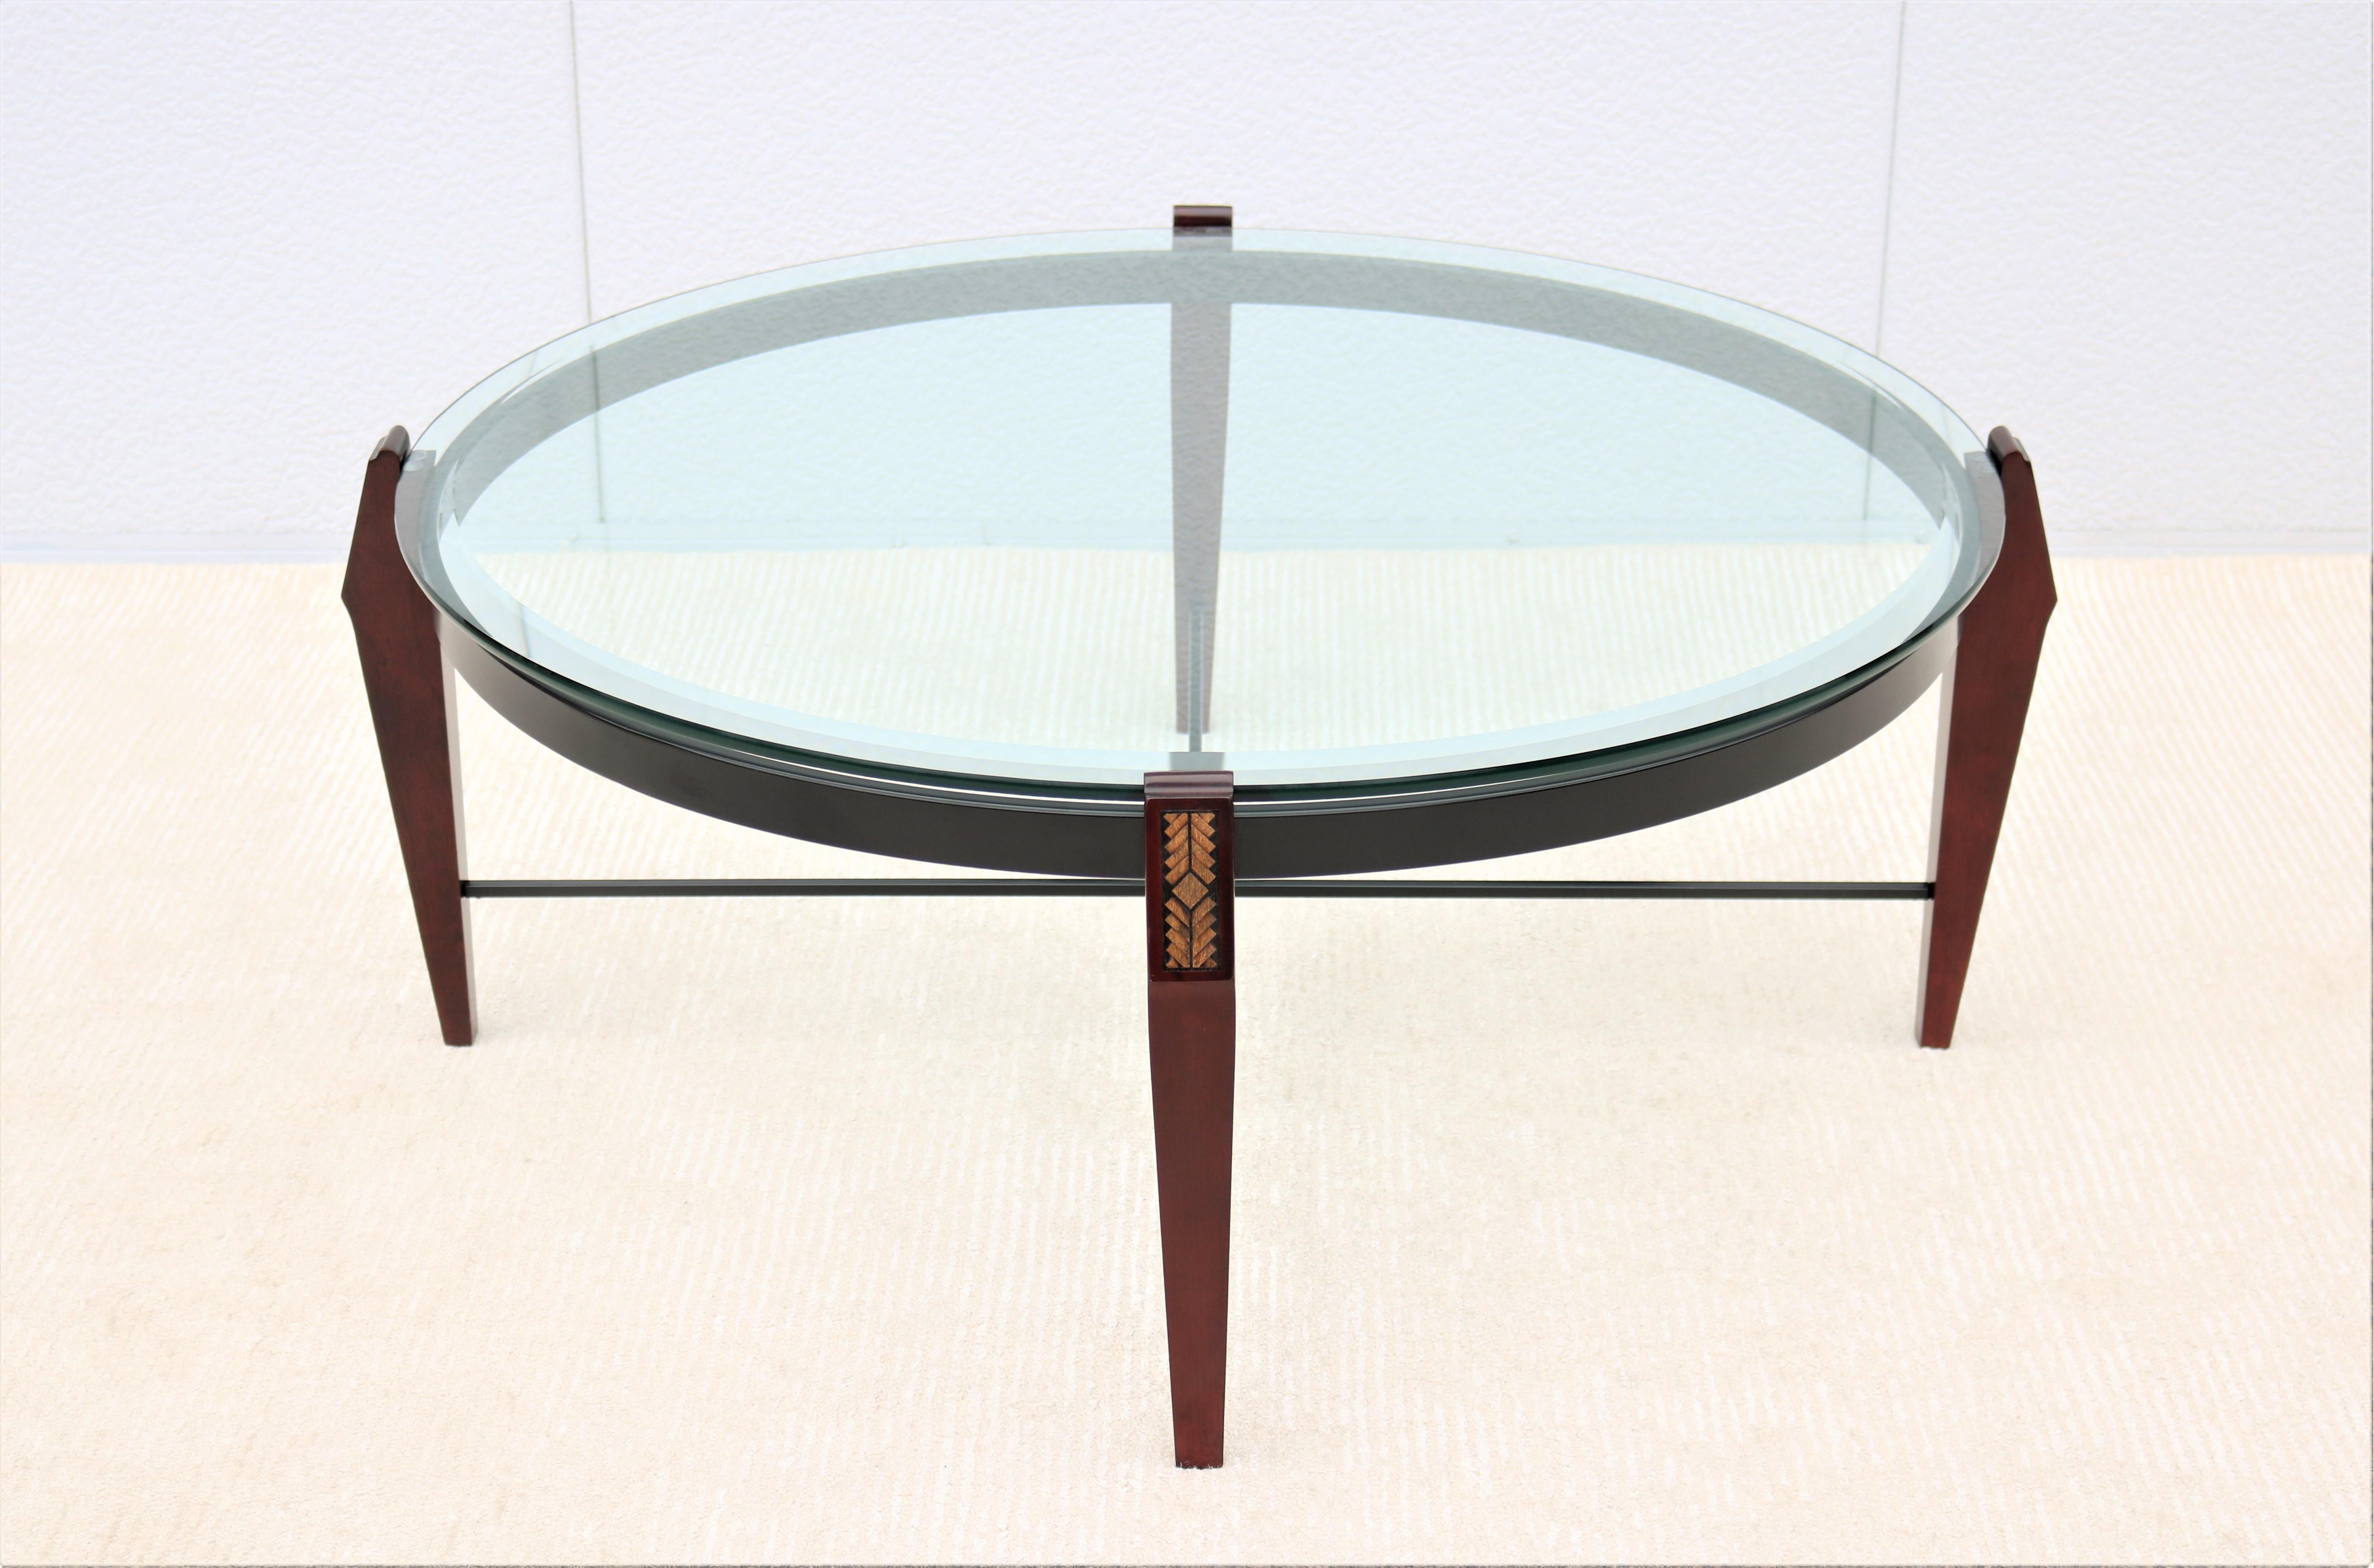 Fabuleuse table basse ronde traditionnelle vintage, inspirée du design des 18ème et 19ème siècles.
Cette magnifique table allie le luxe que vous souhaitez à la fonctionnalité dont vous avez besoin.
La base en bois et en métal crée un profil